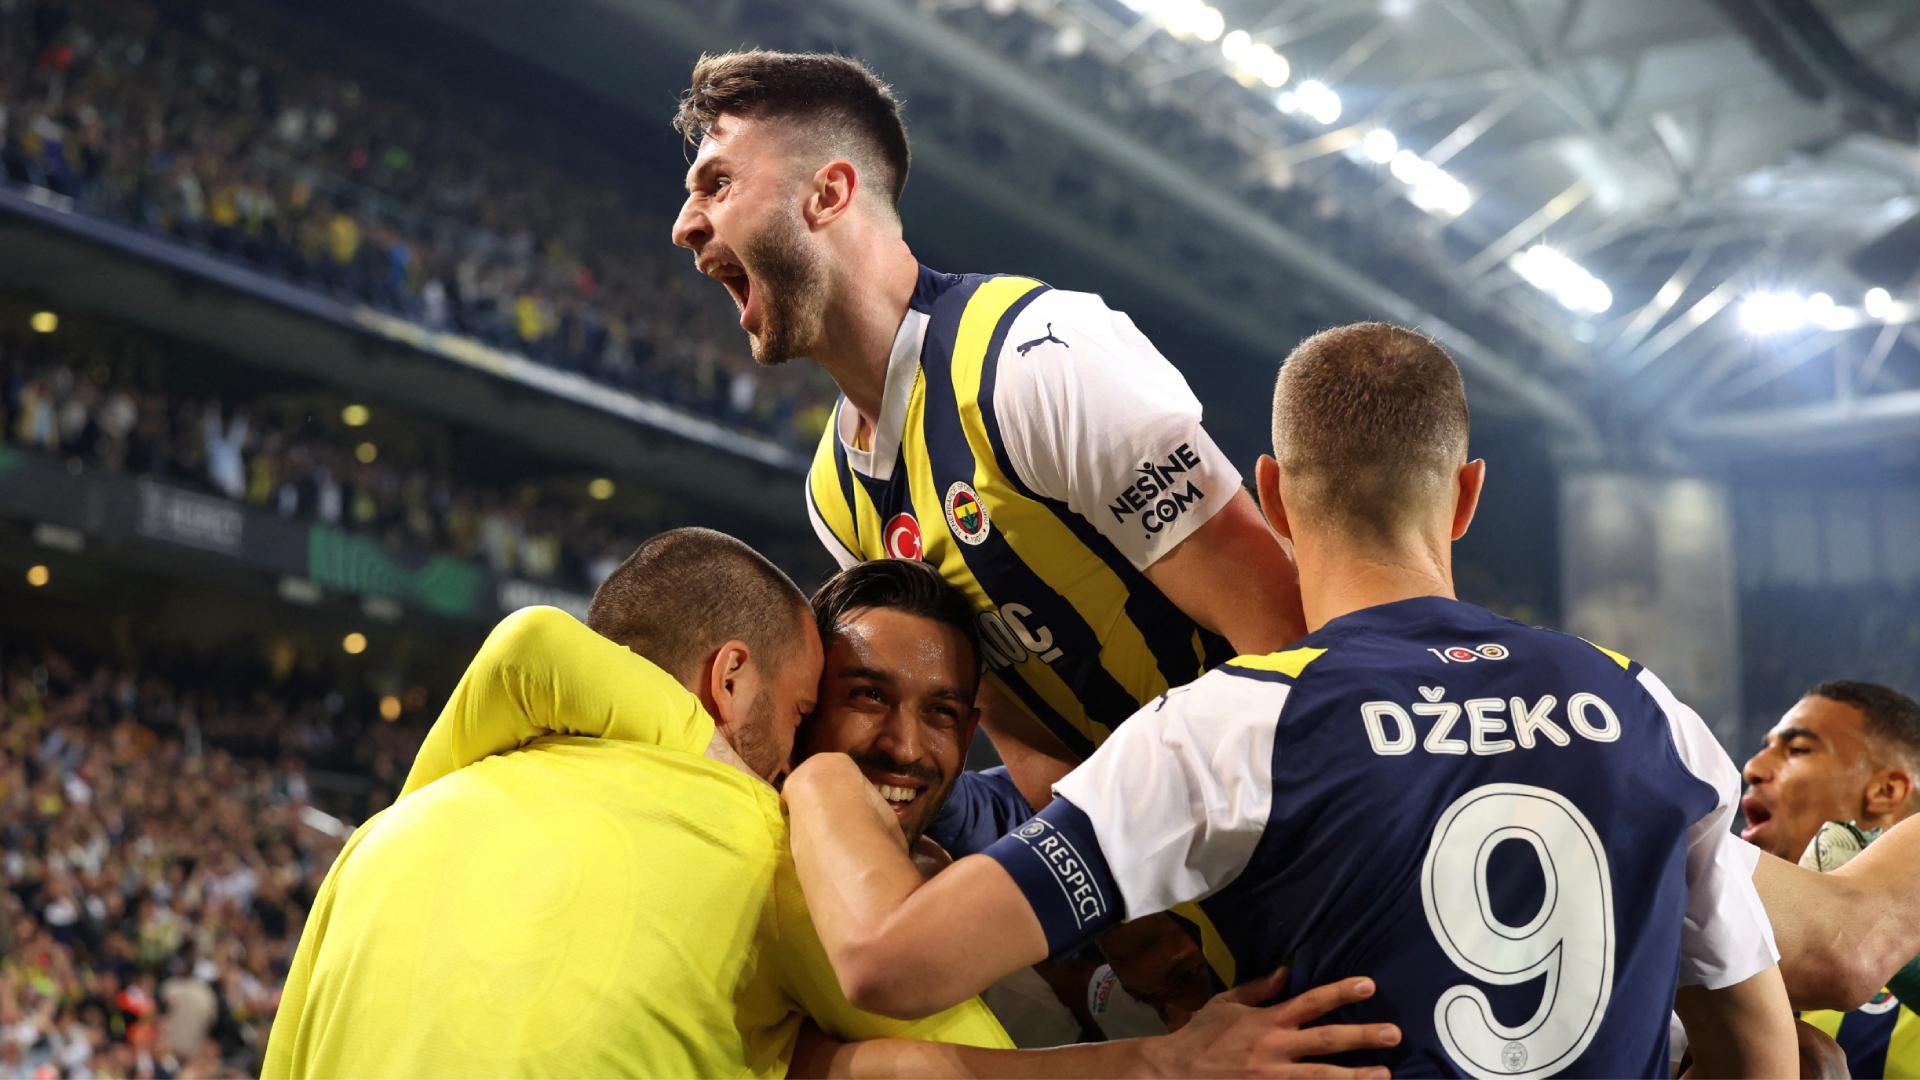 VIDEO | SüperLig Highlights: Fenerbahce vs Kayserispor